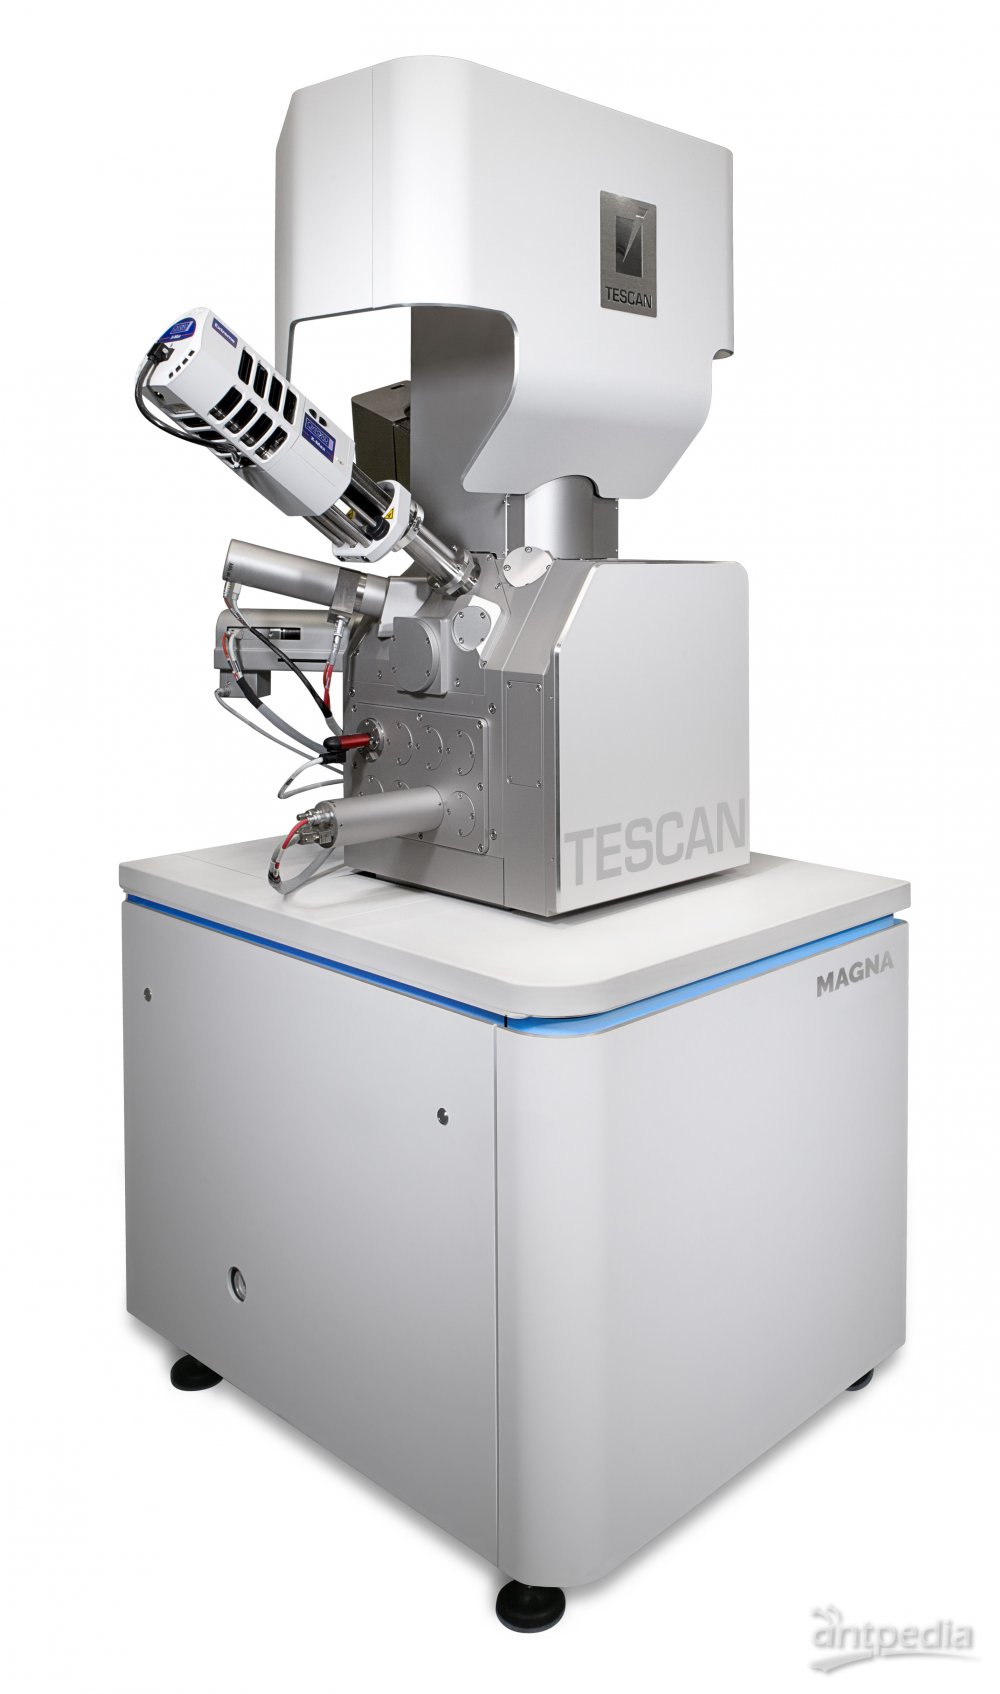 <em>TESCAN</em> MAGNA 超高分辨场发射扫描电镜 用于无涂层生物样品